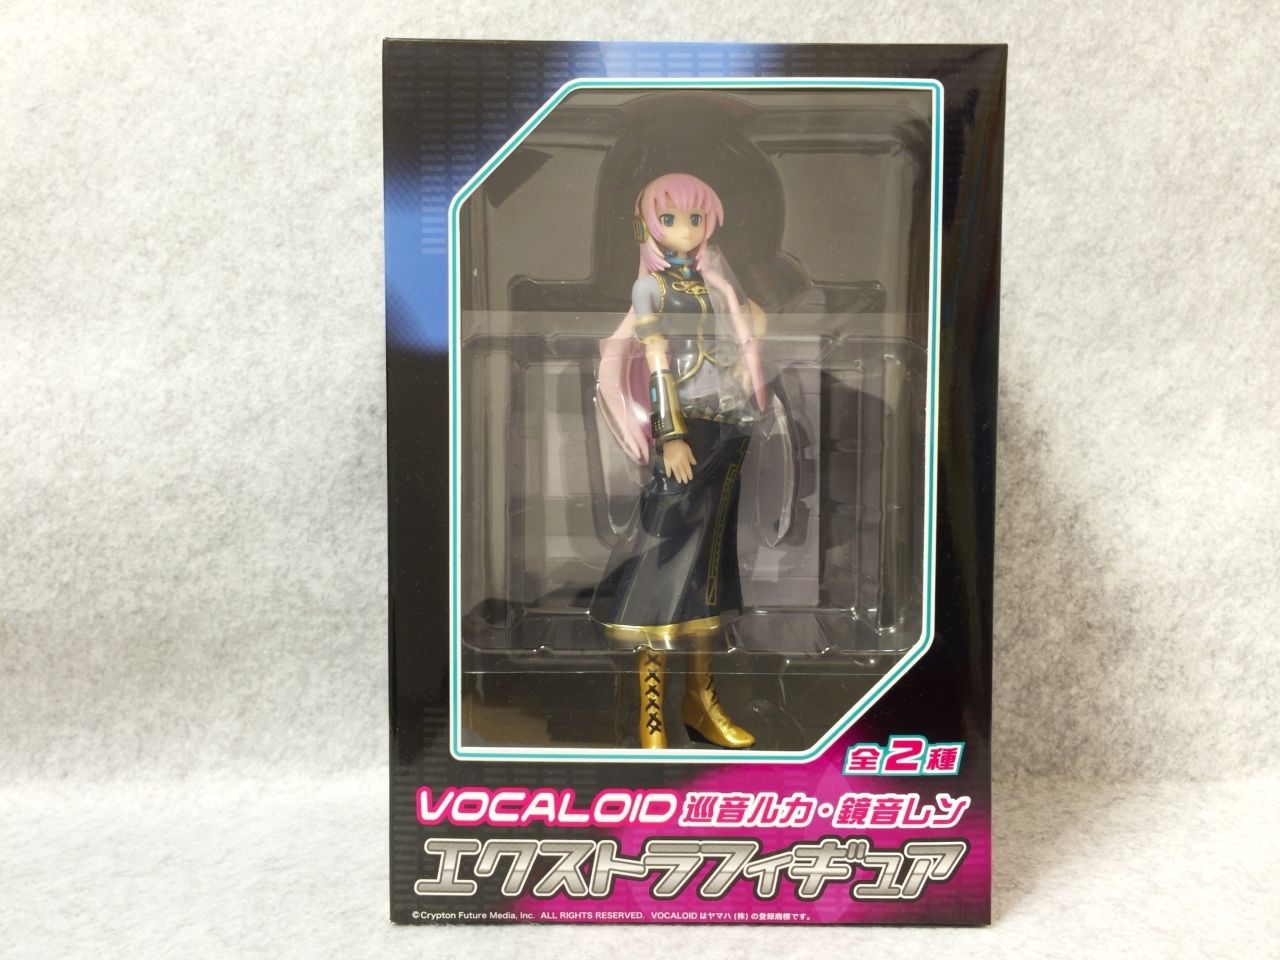 WTB: Megurine Luka Vocaloid vignetteum figure by Sega + KH, FFVII